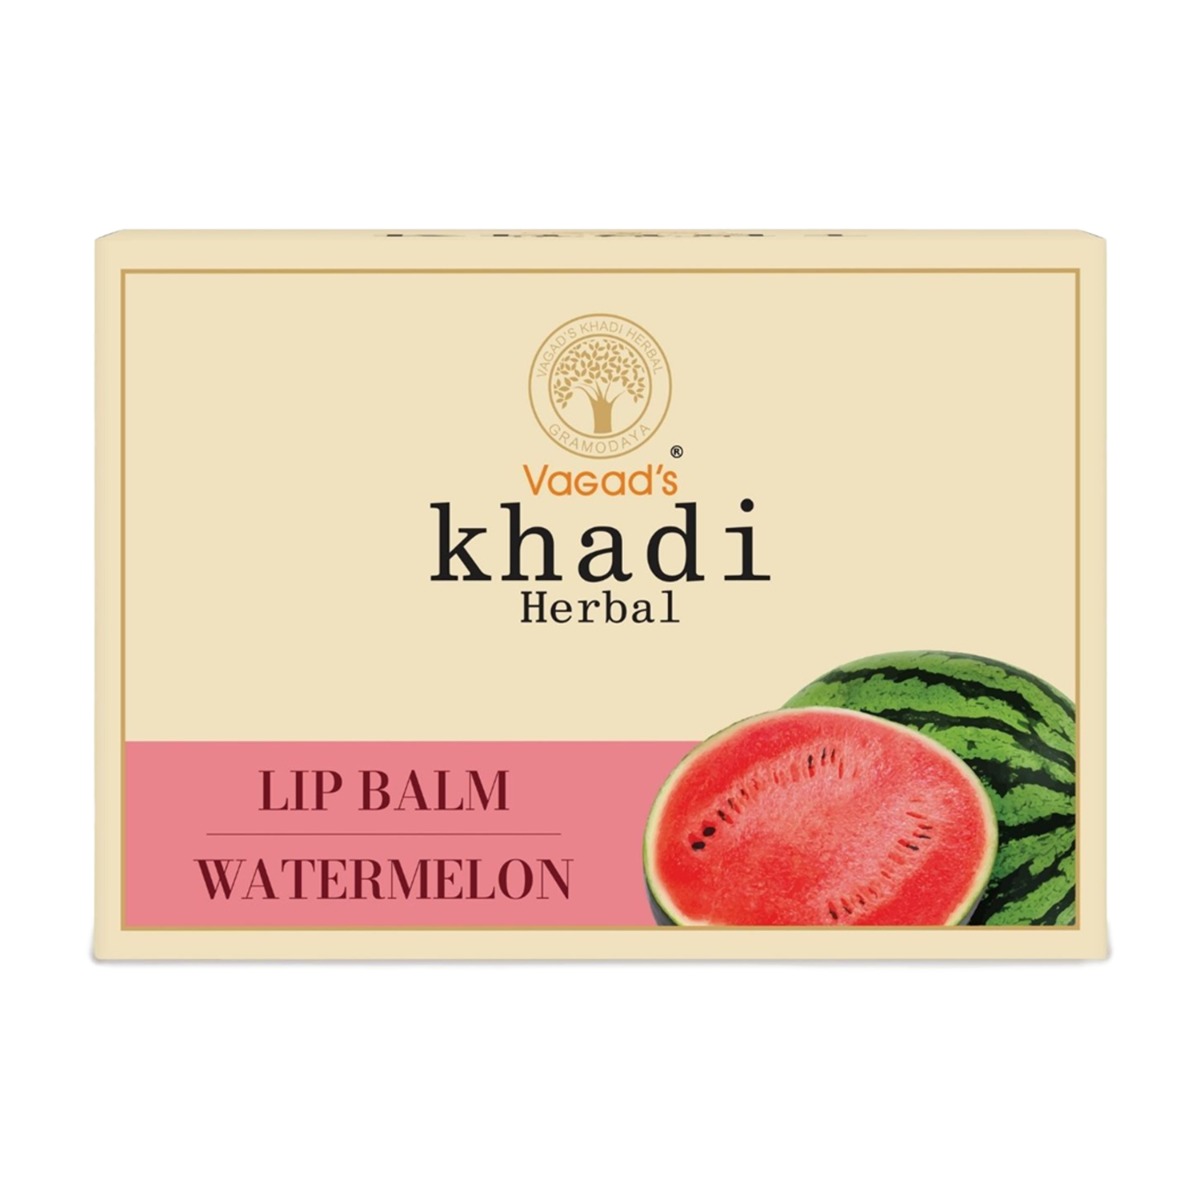 Vagad's Khadi Watermelon Lip Balm, 10gm